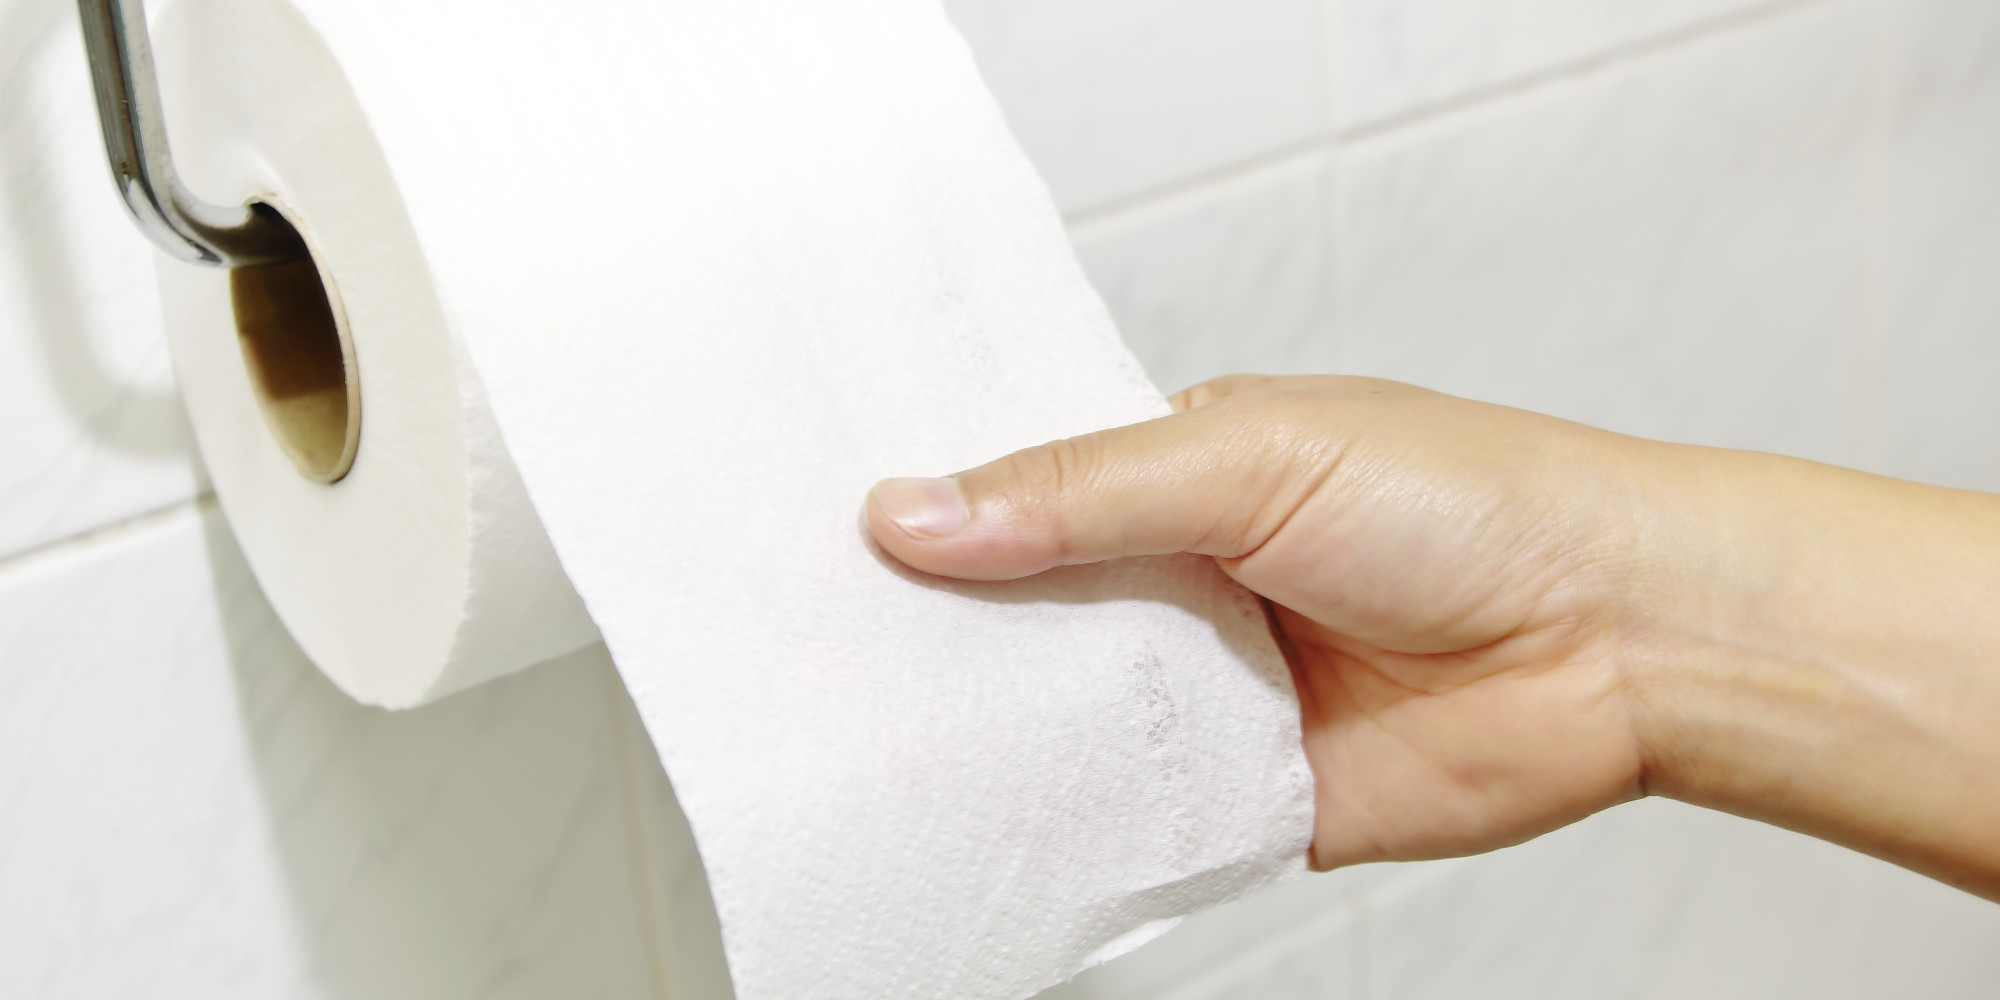 papel higiénico,papel higiénico,papel,toalla de papel,producto de papel,accesorio de baño